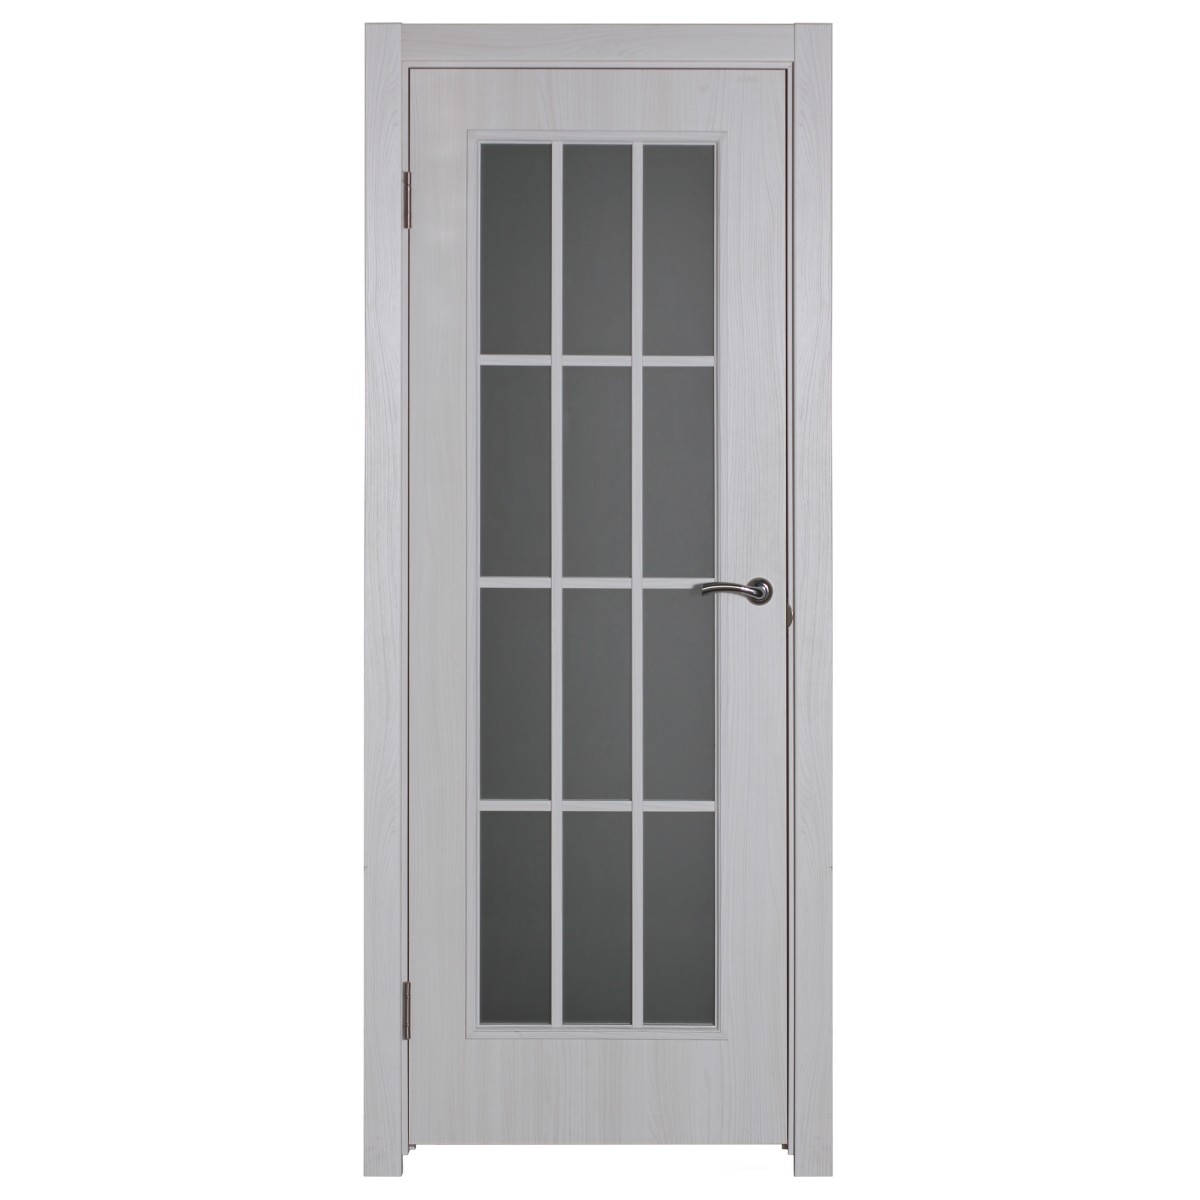 Дверь межкомнатная остеклённая Провенца 90x200 см цвет